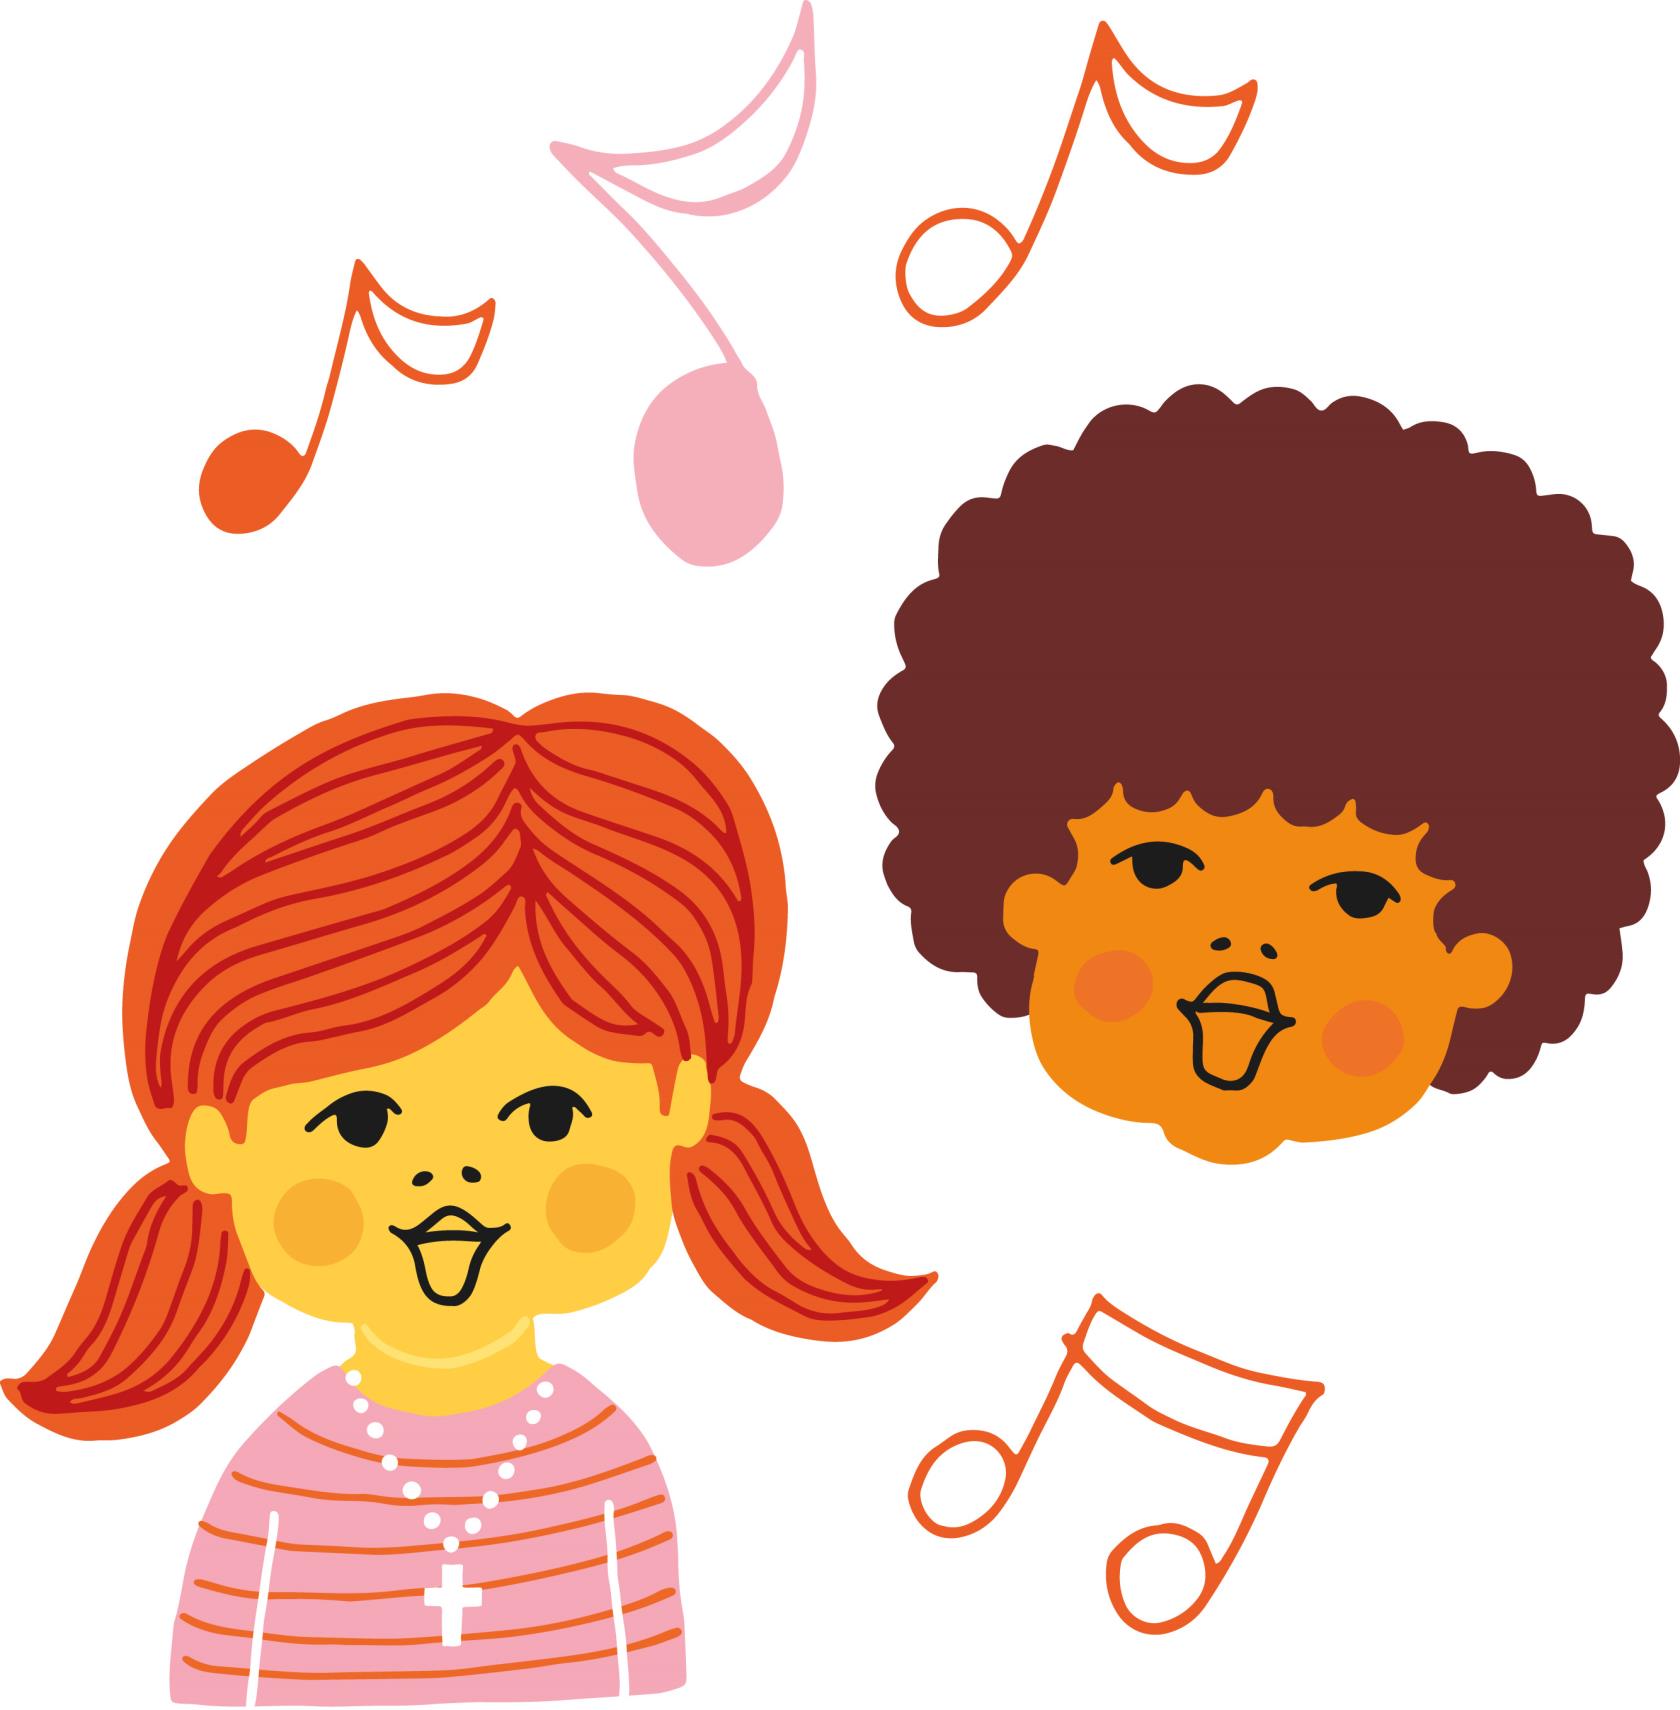 Illustrationen föreställer två barn som sjunger 